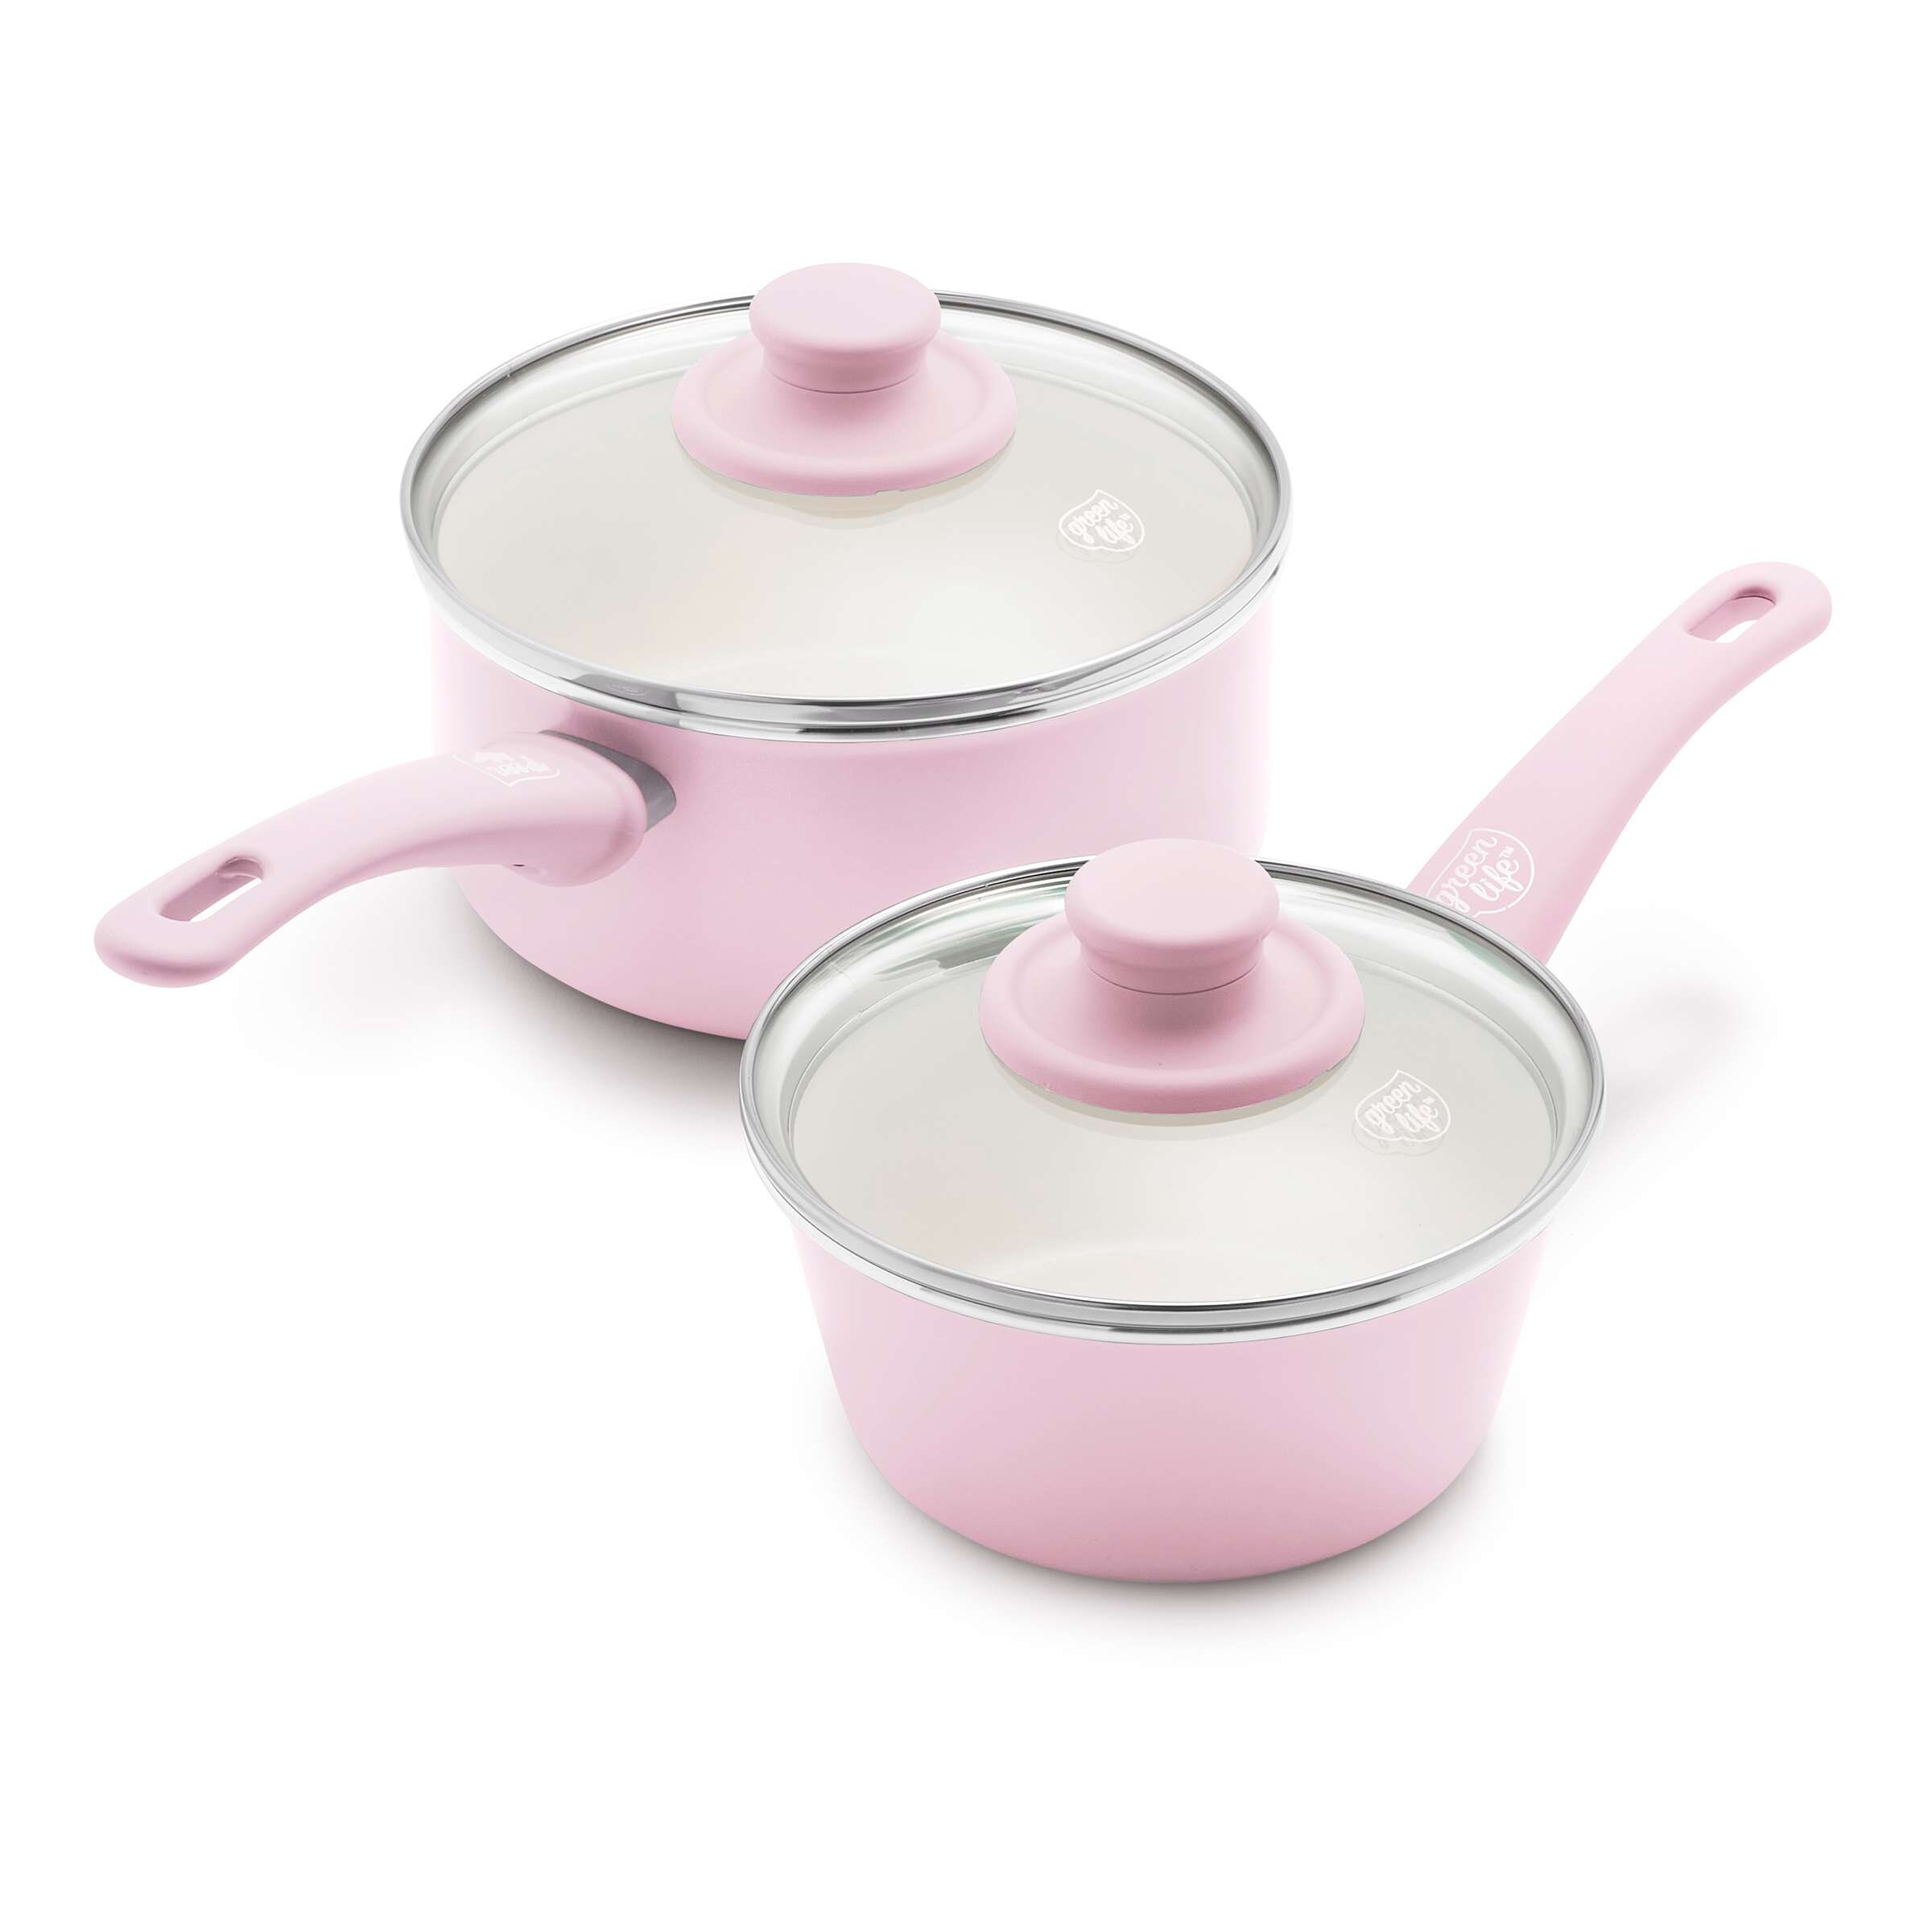 Soft Grip 18 Piece Cookware Set, Pink - Bed Bath & Beyond - 37256166